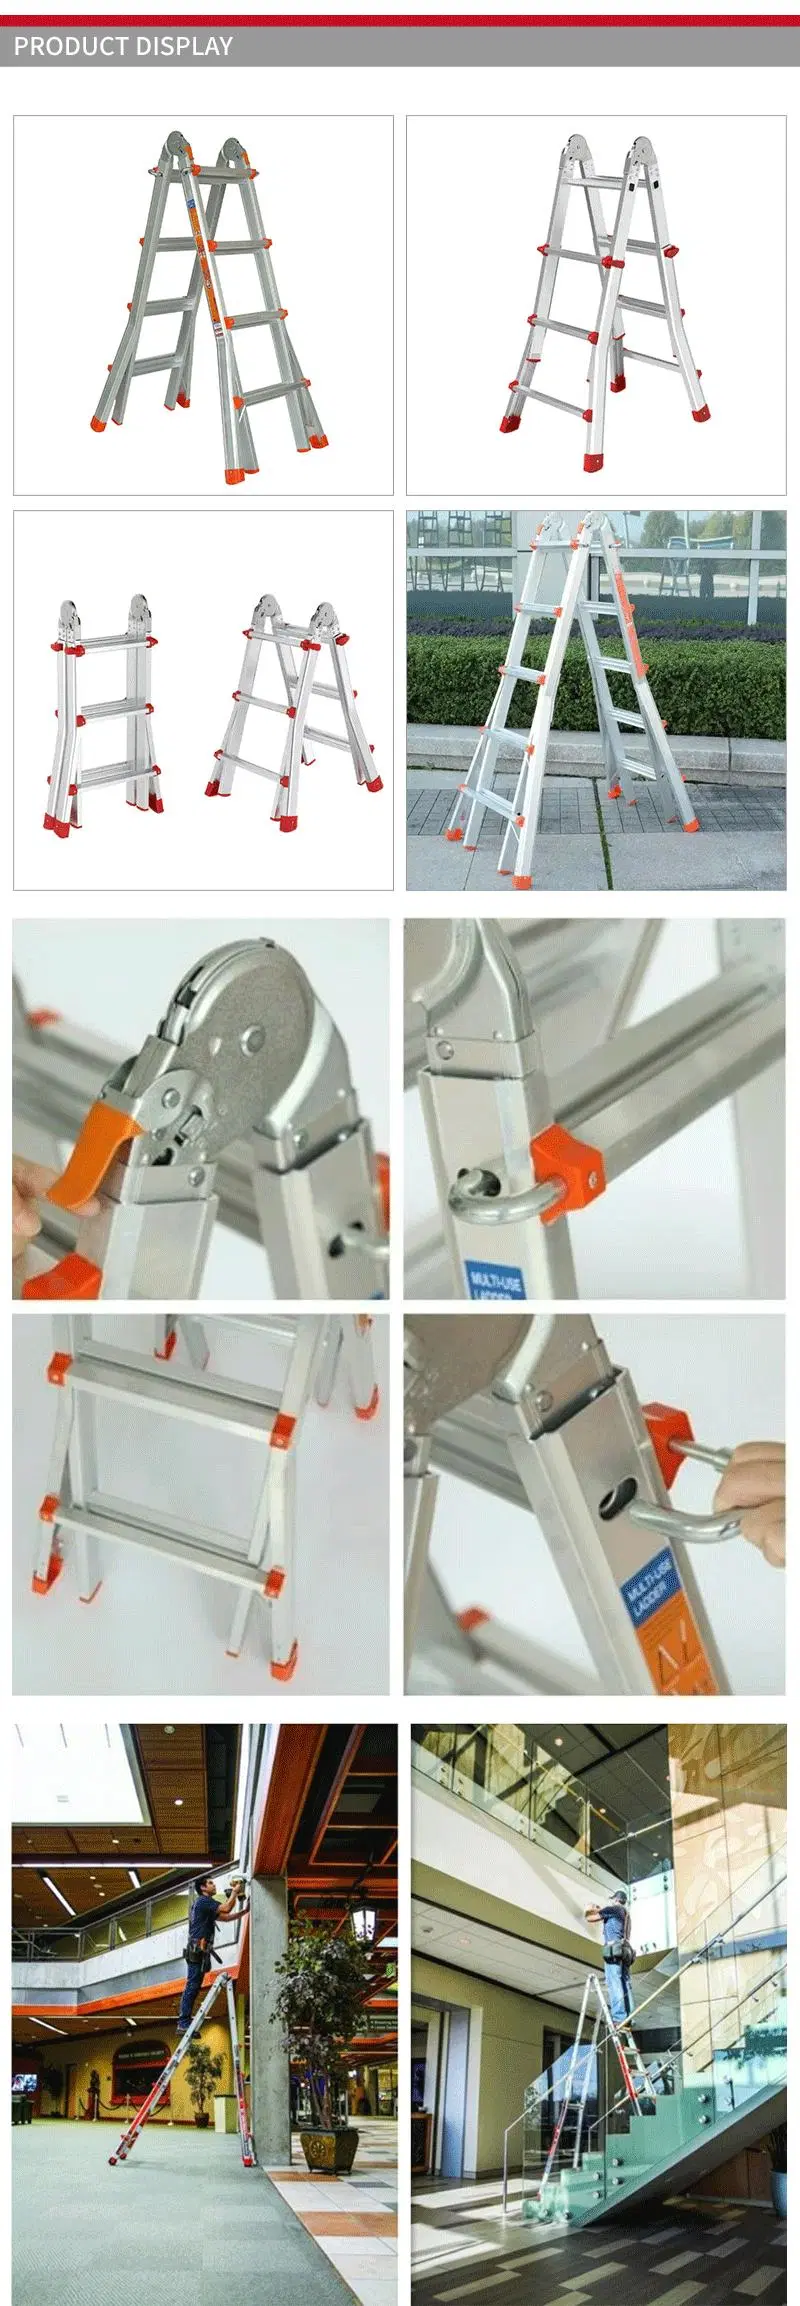 Flared Legs Multipurpose Aluminum Giant Foldable Ladder for Stairs